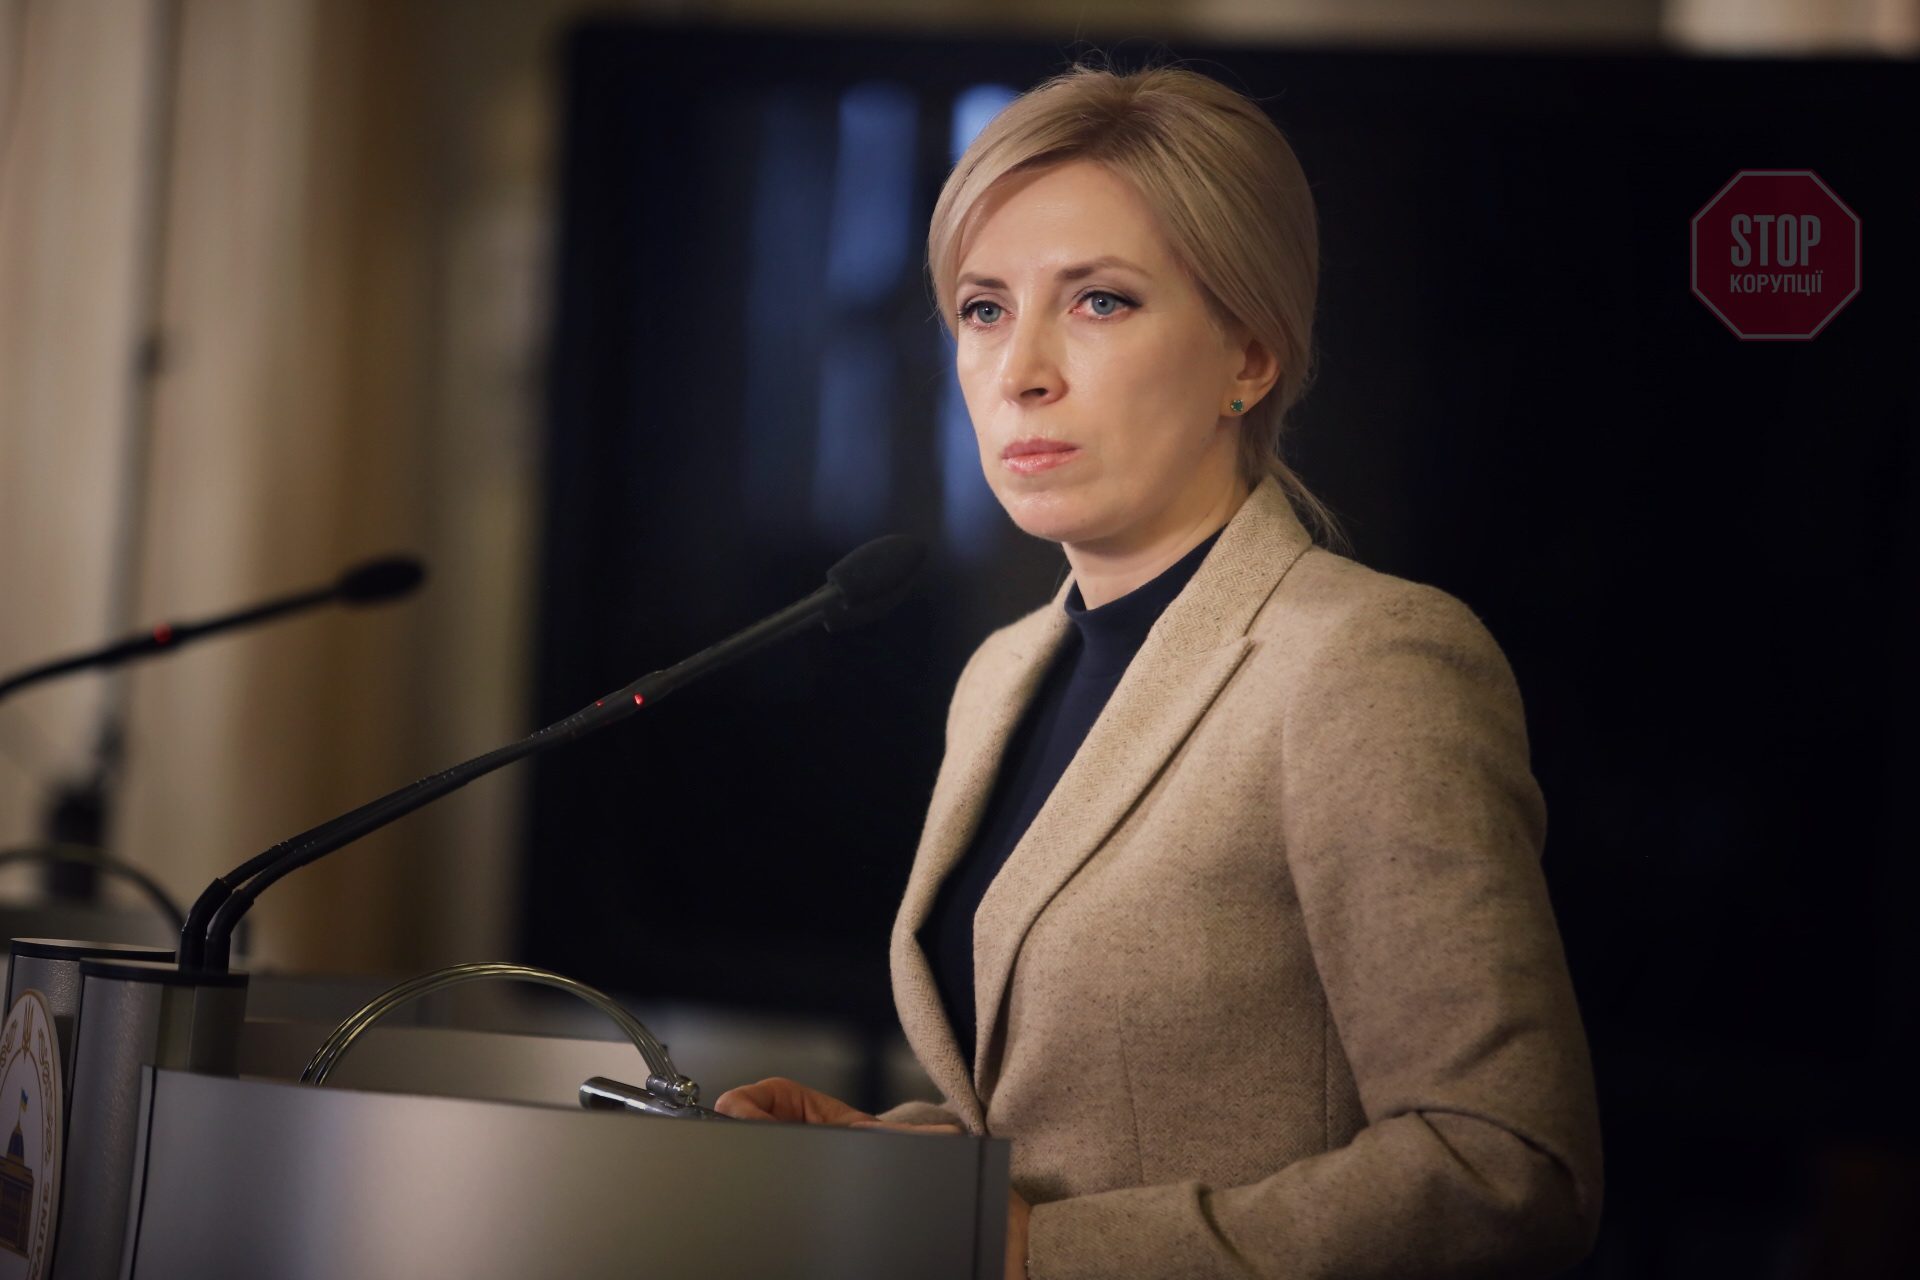 Ուկրաինայի փոխվարչապետի՝ մարդասիրական միջանցքների մասին խոսքը կիսատ է ներկայացվում մամուլում